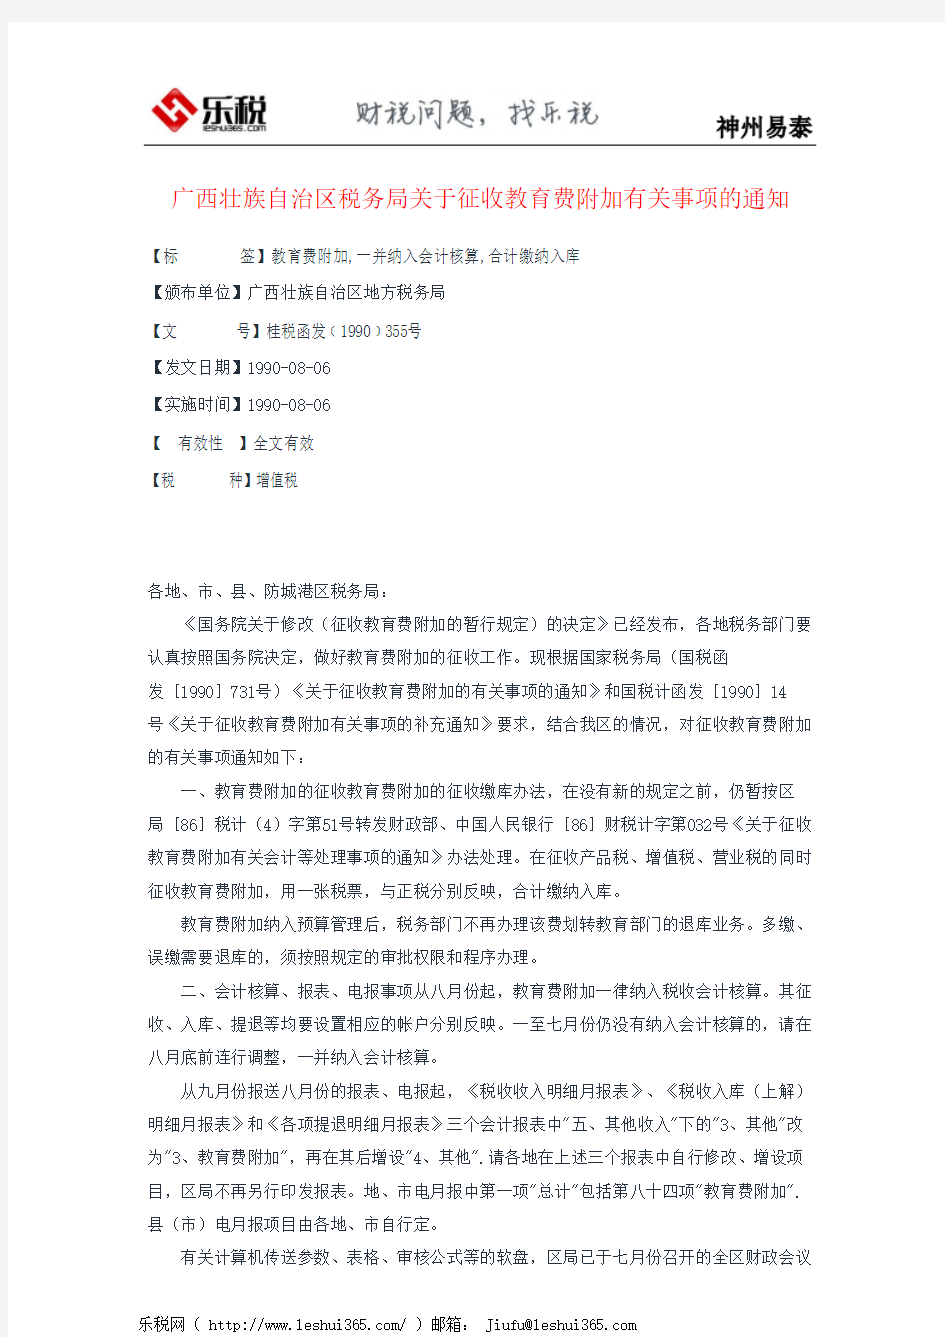 广西壮族自治区税务局关于征收教育费附加有关事项的通知